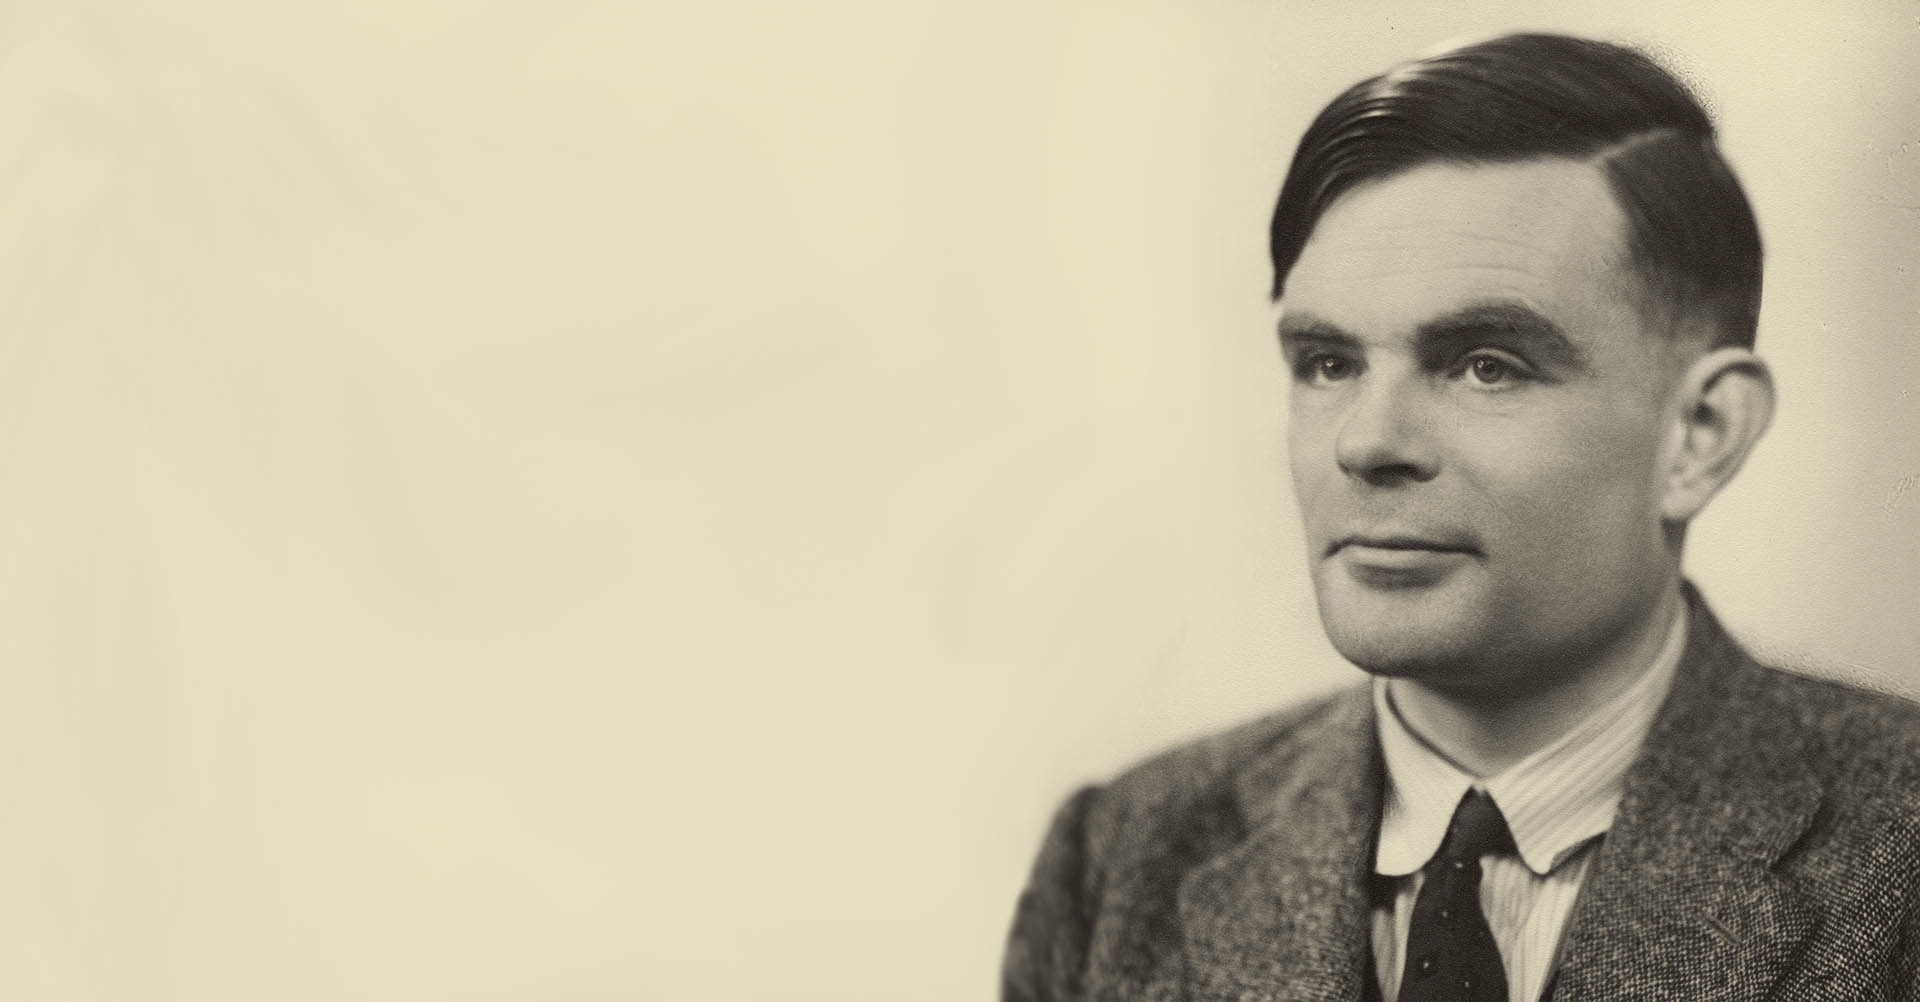 Photo of Alan Turing